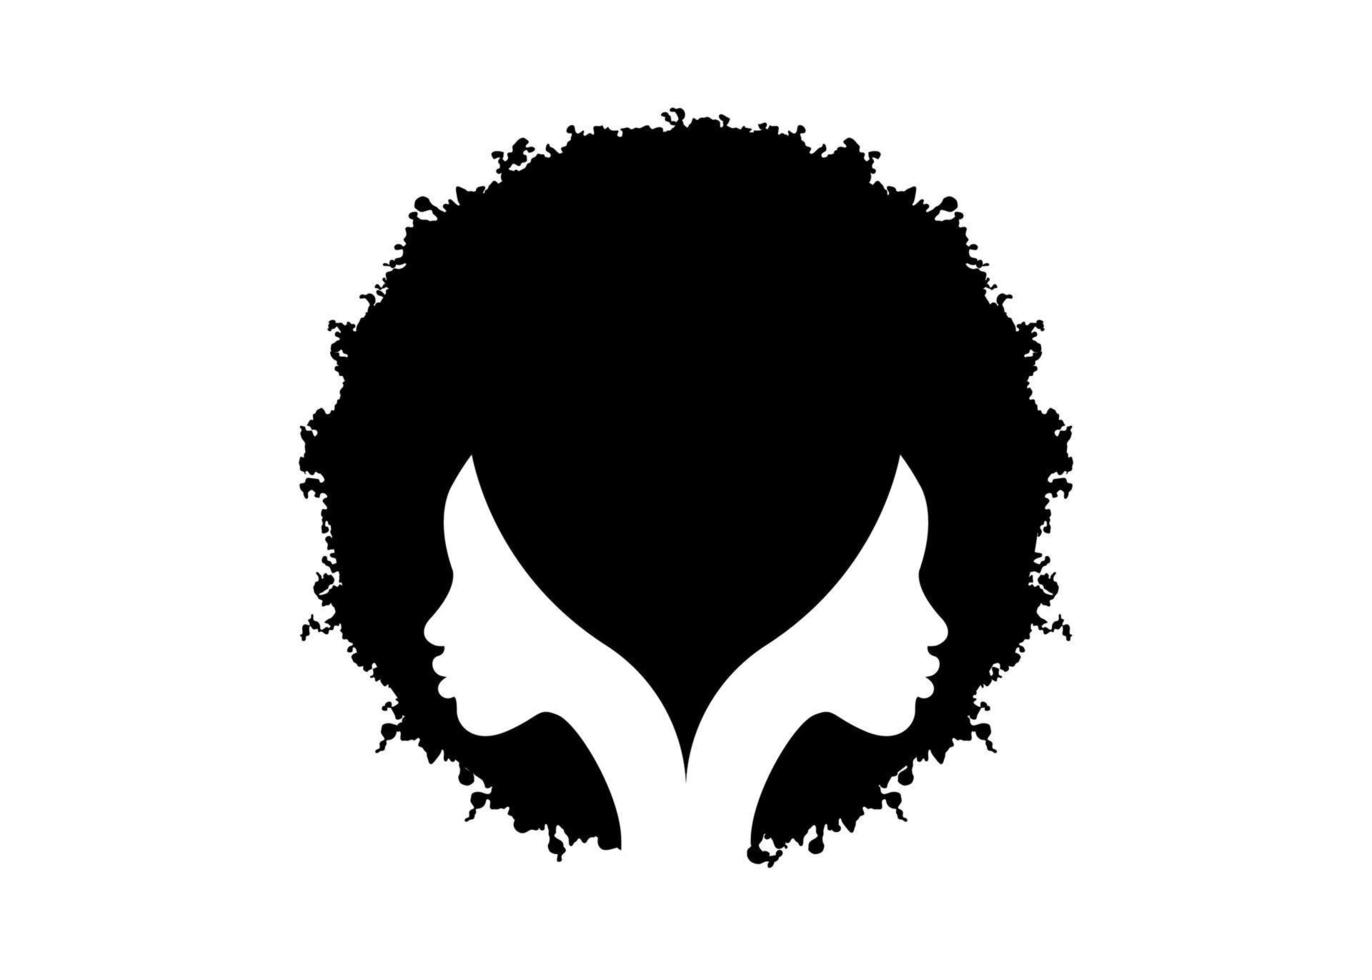 logo ronde ontwerp afro-amerikaanse vrouw gezicht profiel met zwart krullend afro haar. vrouwen profiel kapsel silhouet op de witte achtergrond. vector illustratie geïsoleerd